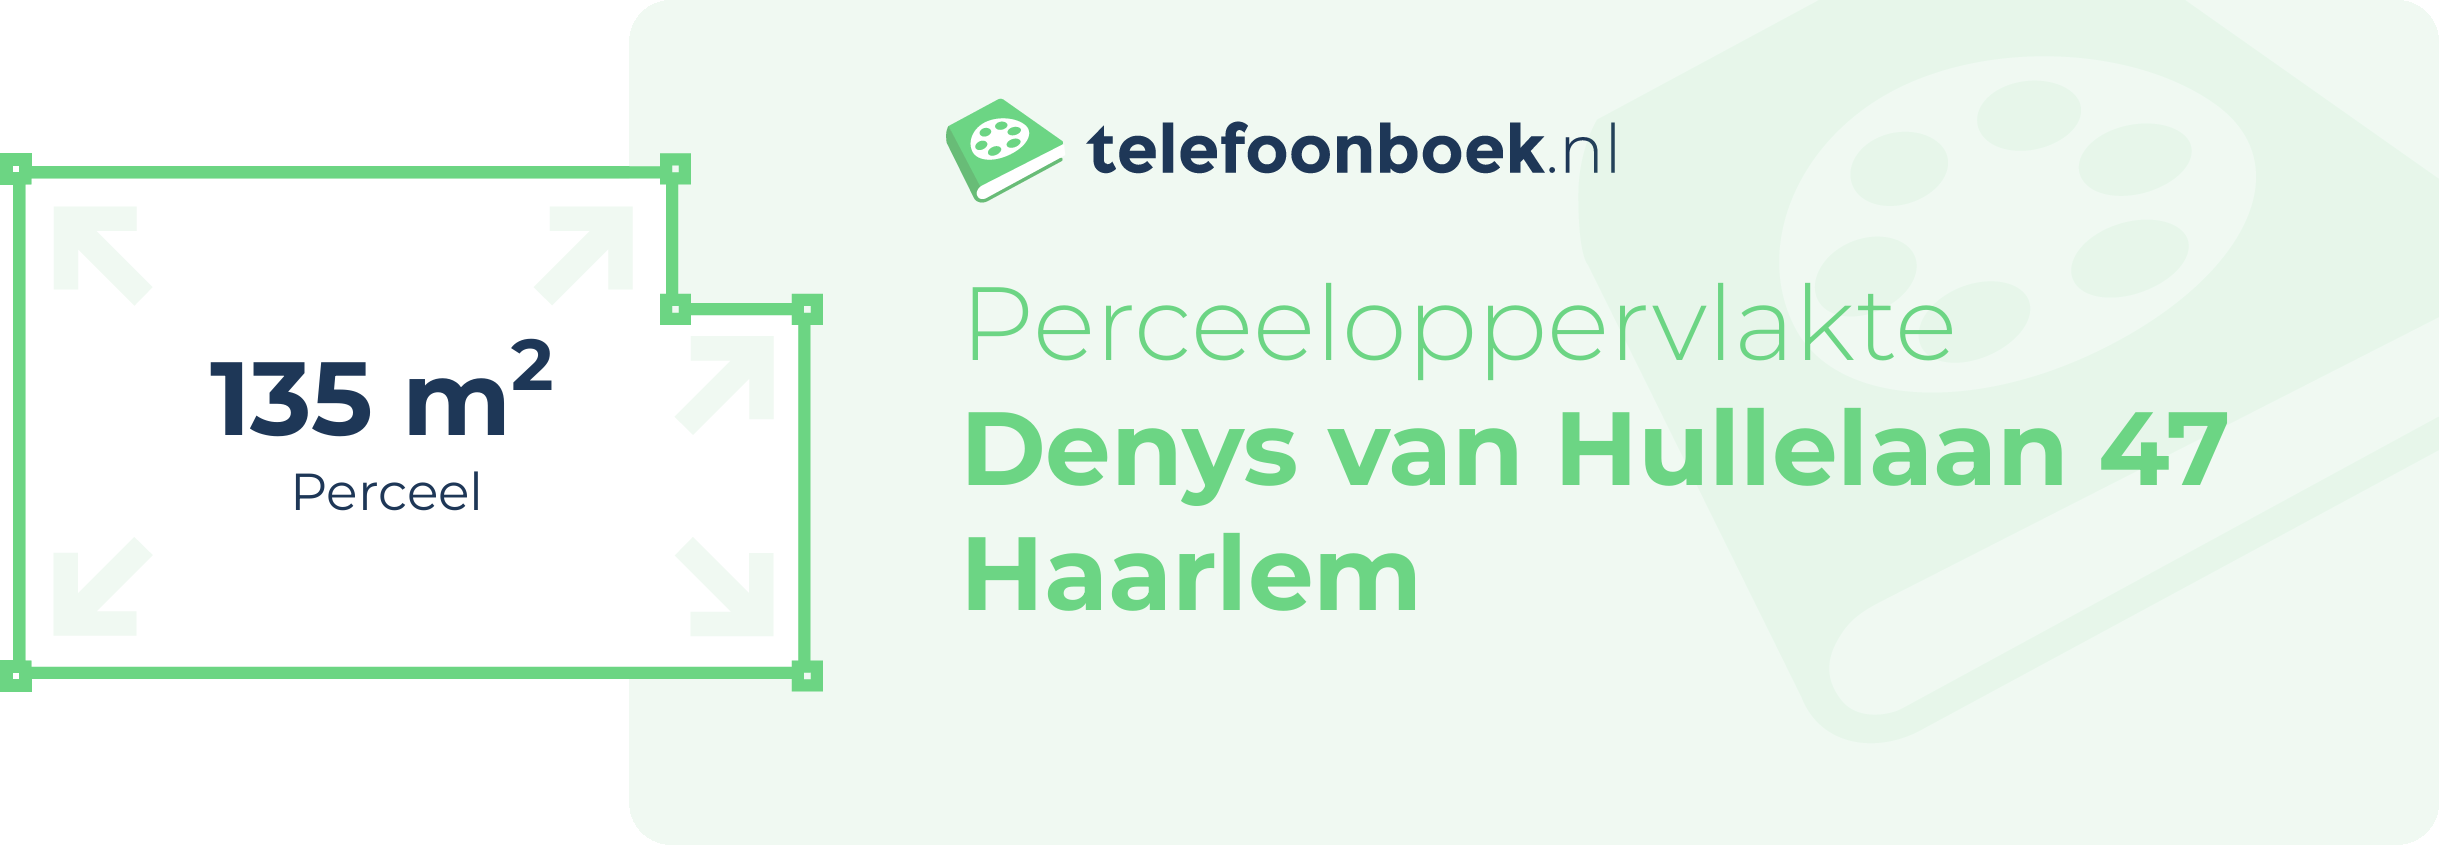 Perceeloppervlakte Denys Van Hullelaan 47 Haarlem